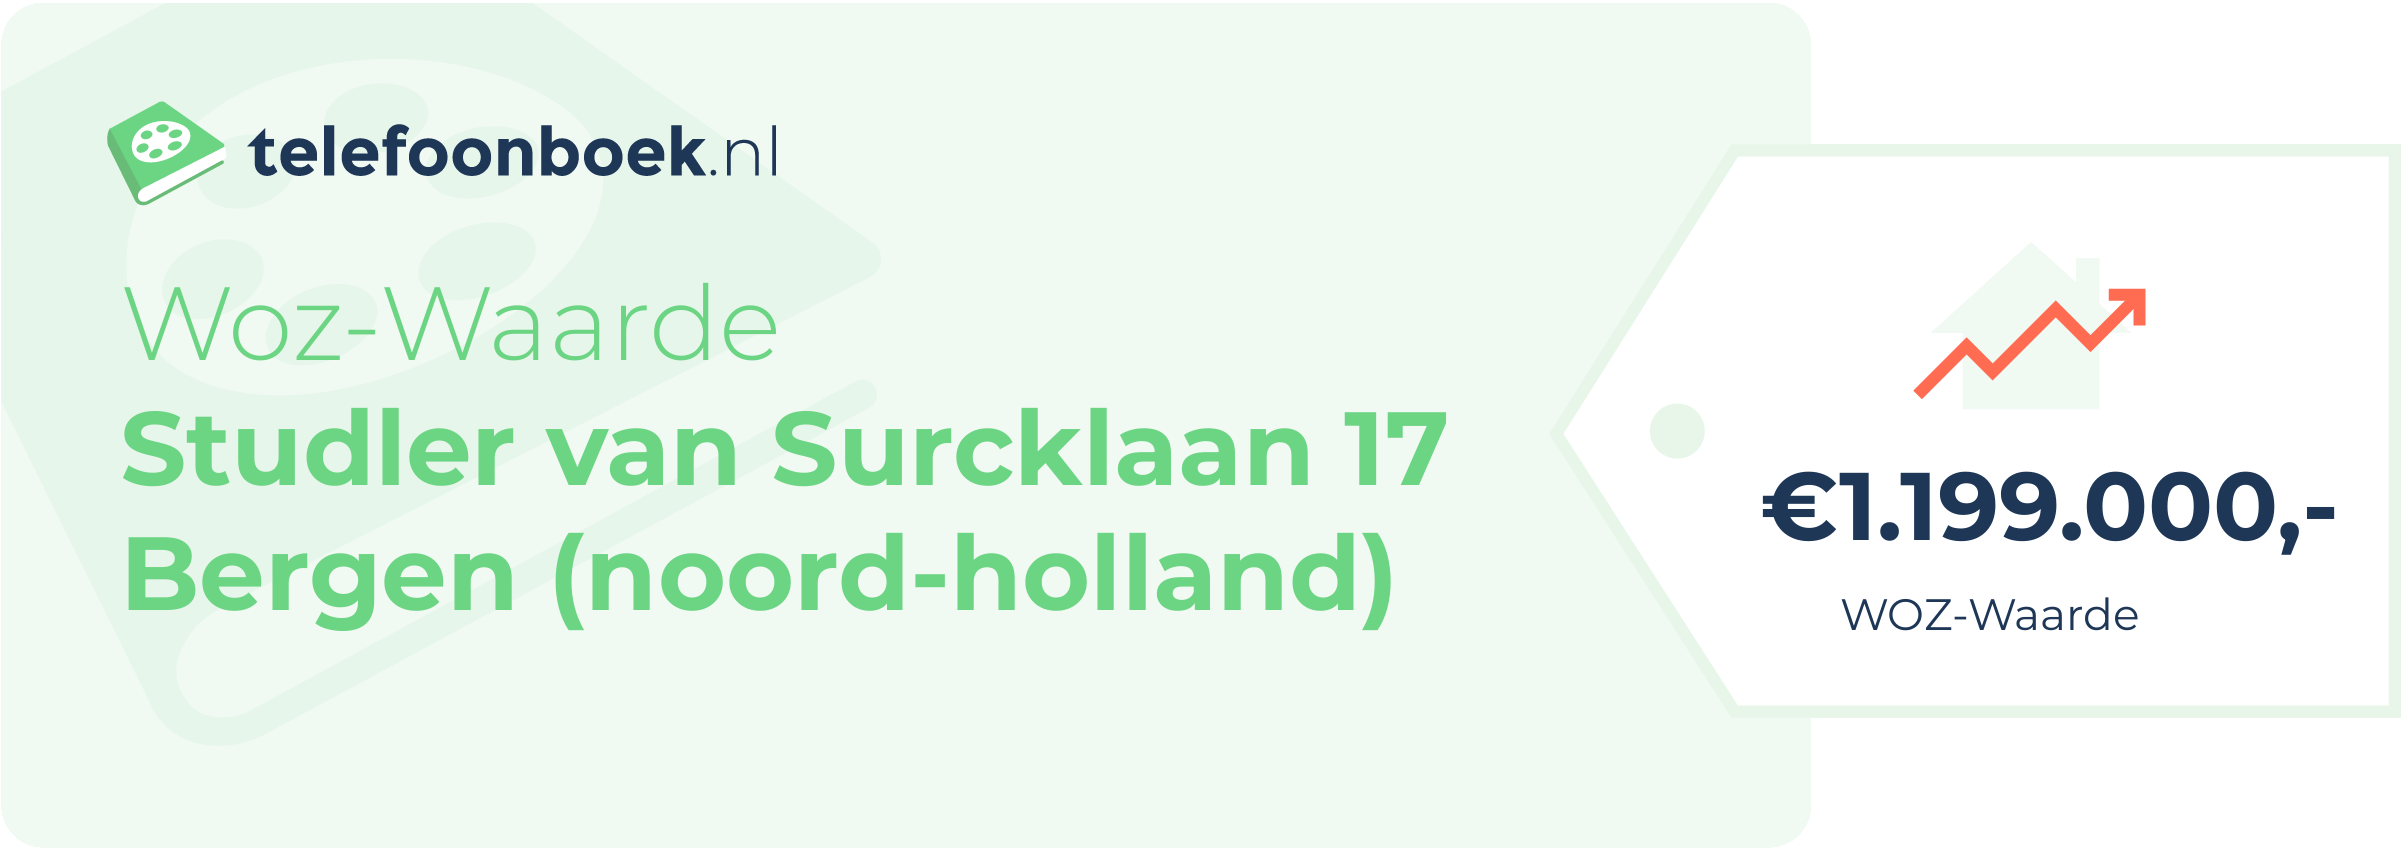 WOZ-waarde Studler Van Surcklaan 17 Bergen (Noord-Holland)